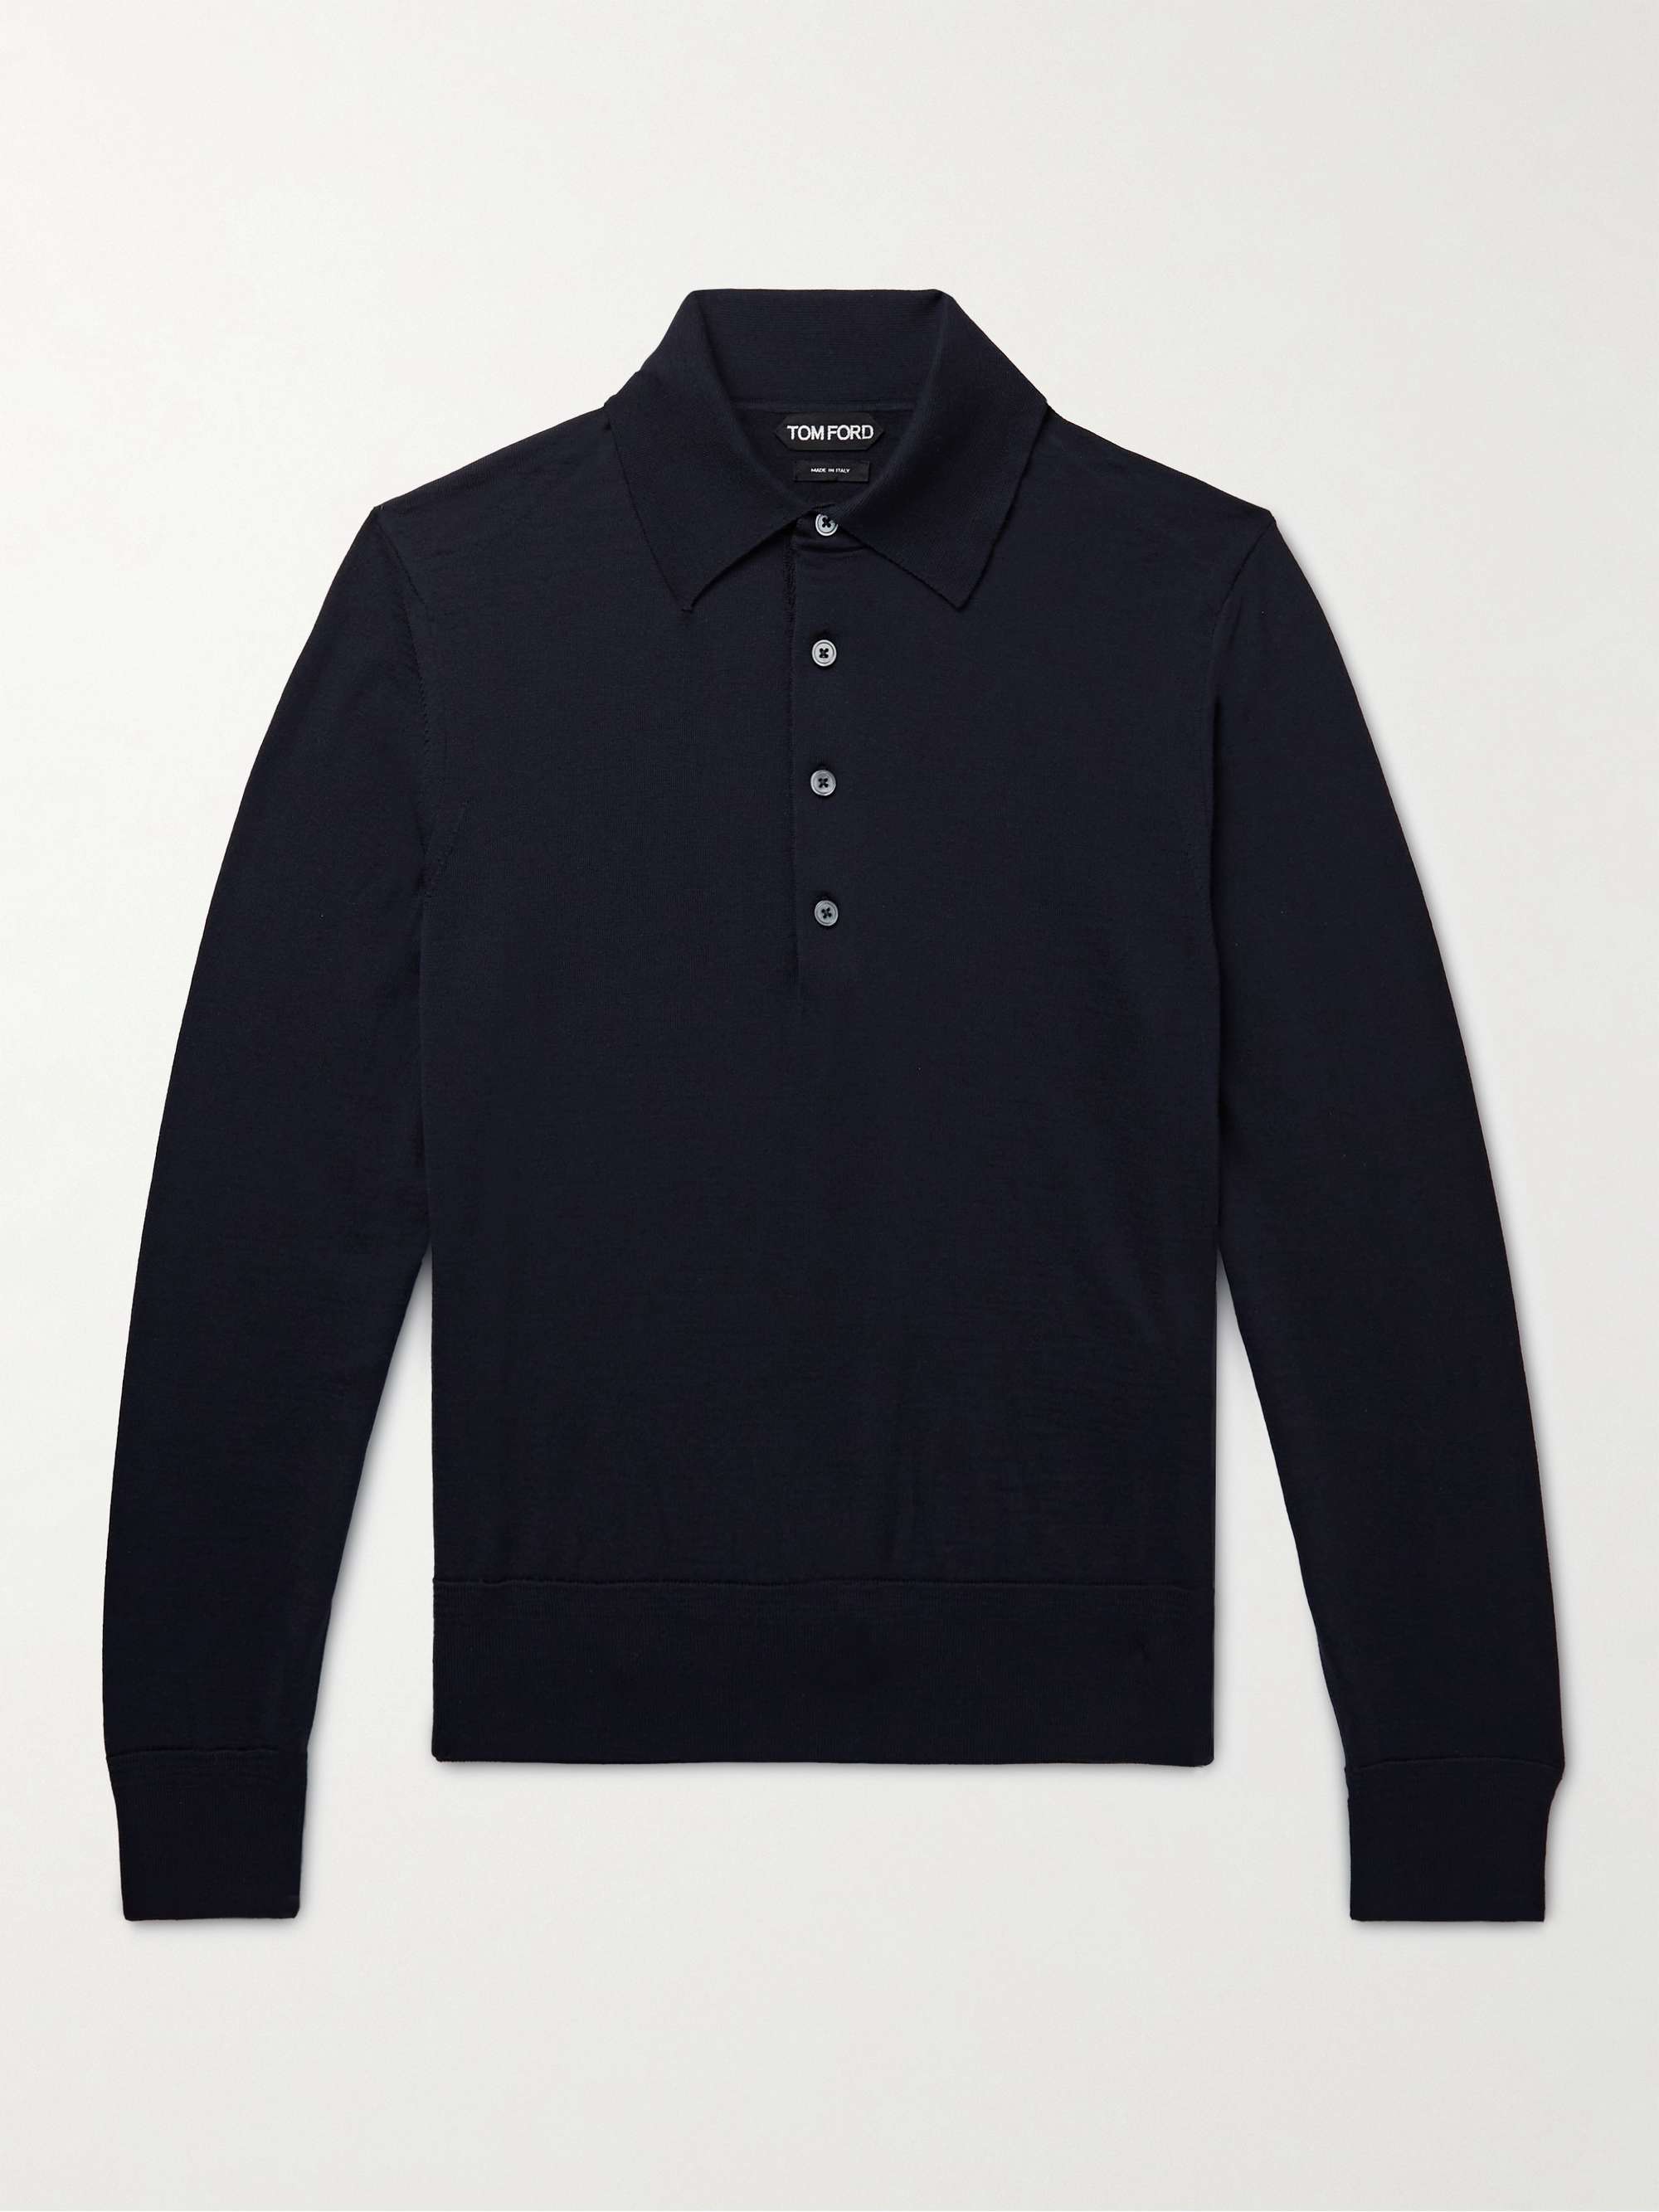 TOM FORD Wool Polo Shirt for Men | MR PORTER